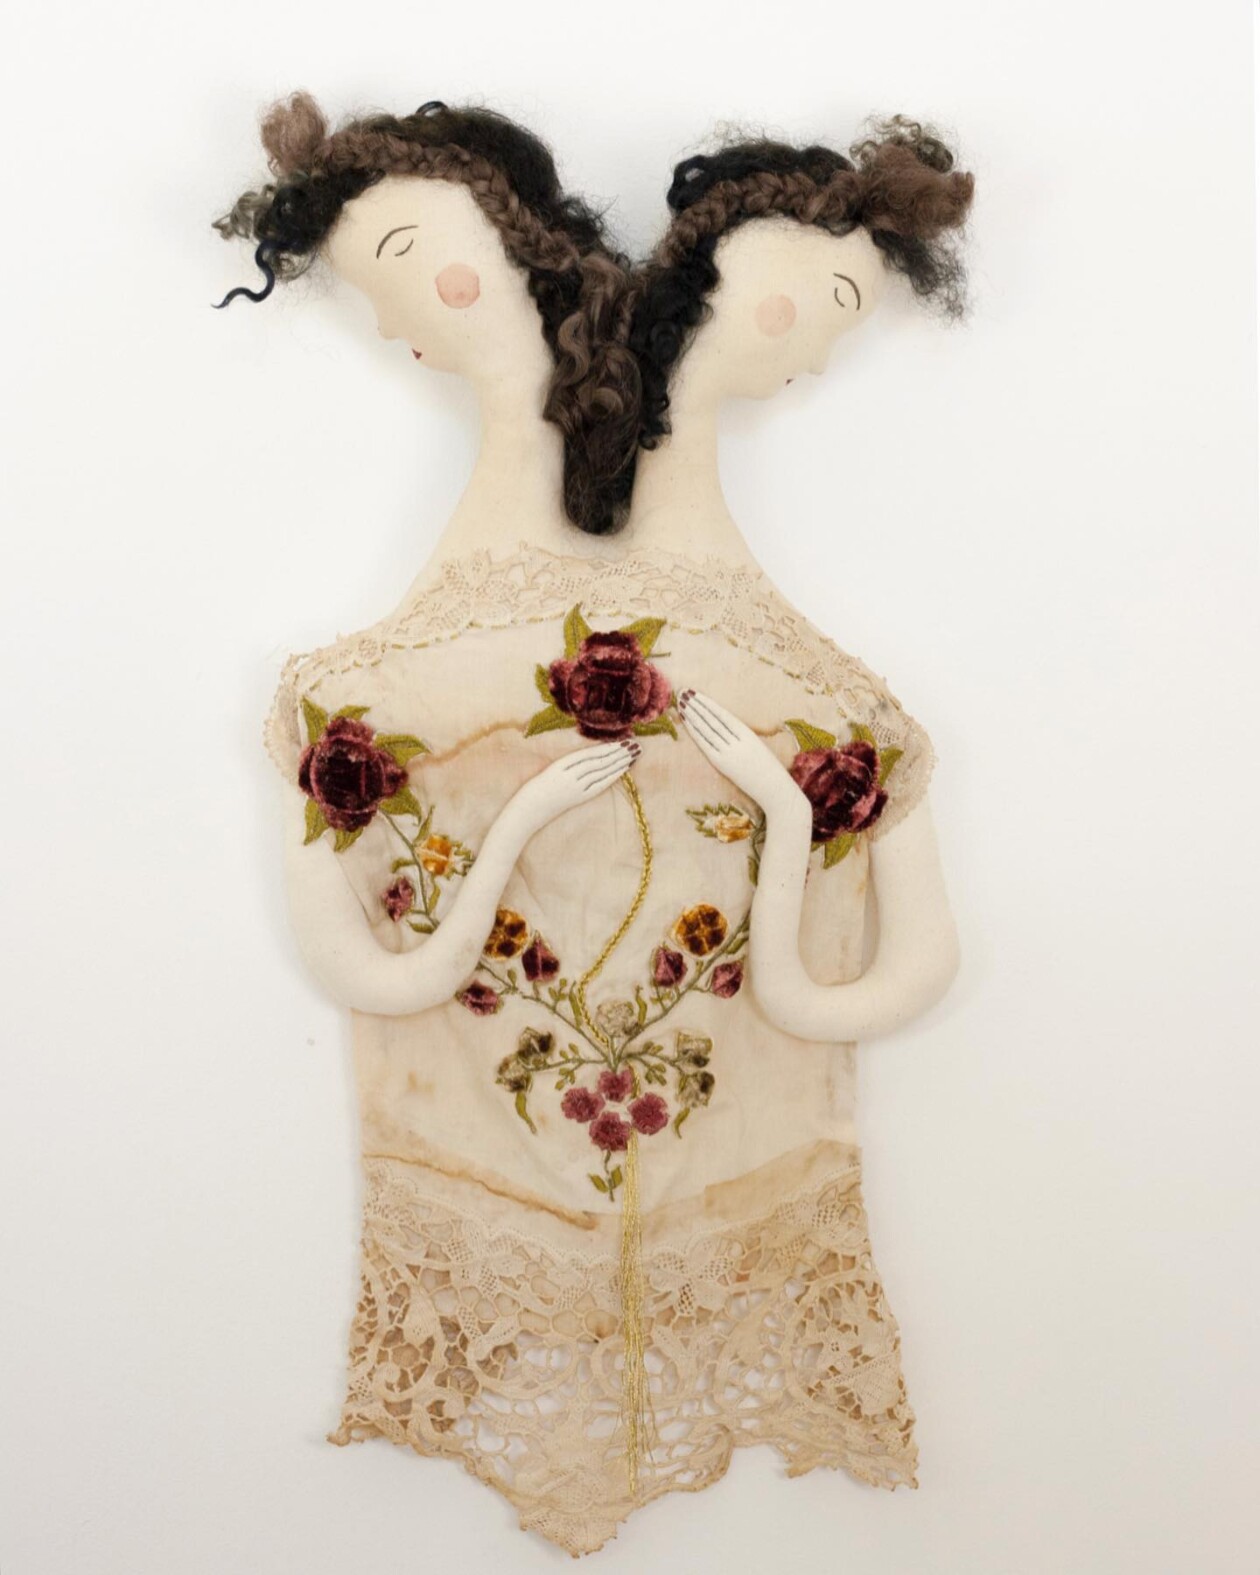 Magical Textile Dolls By Anouk De Groot (20)